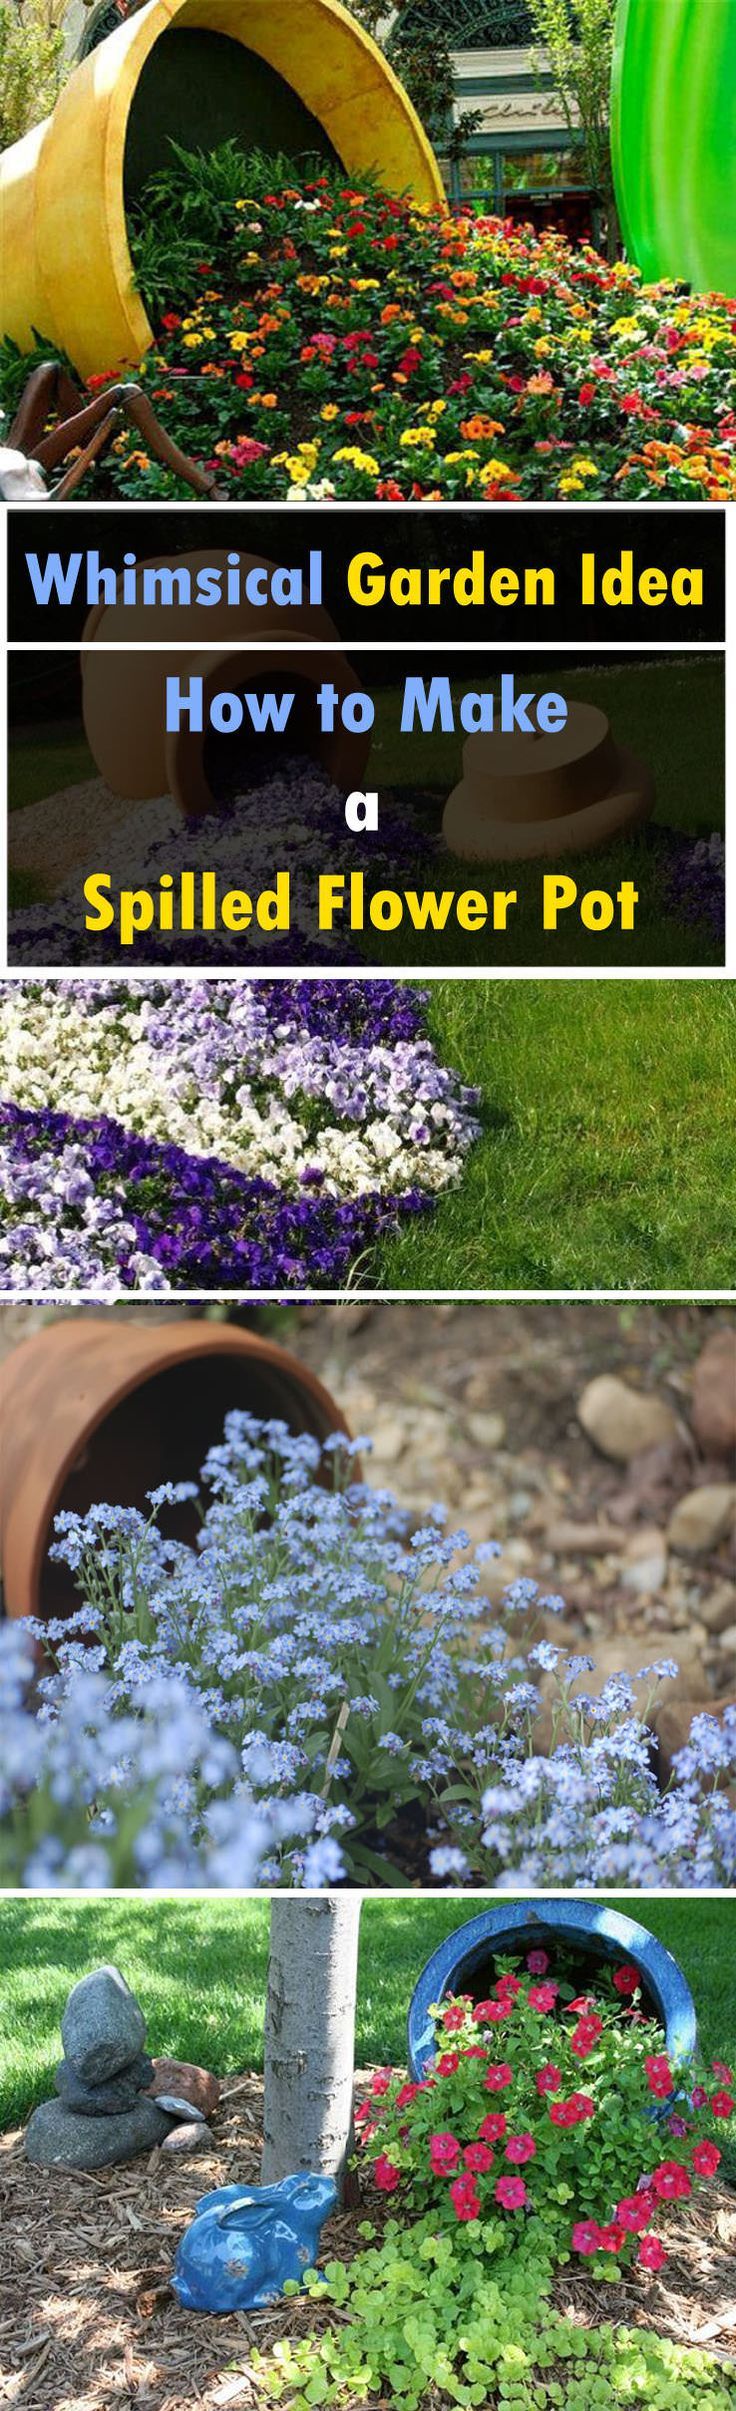 How to Make a Spilled Flower Pot